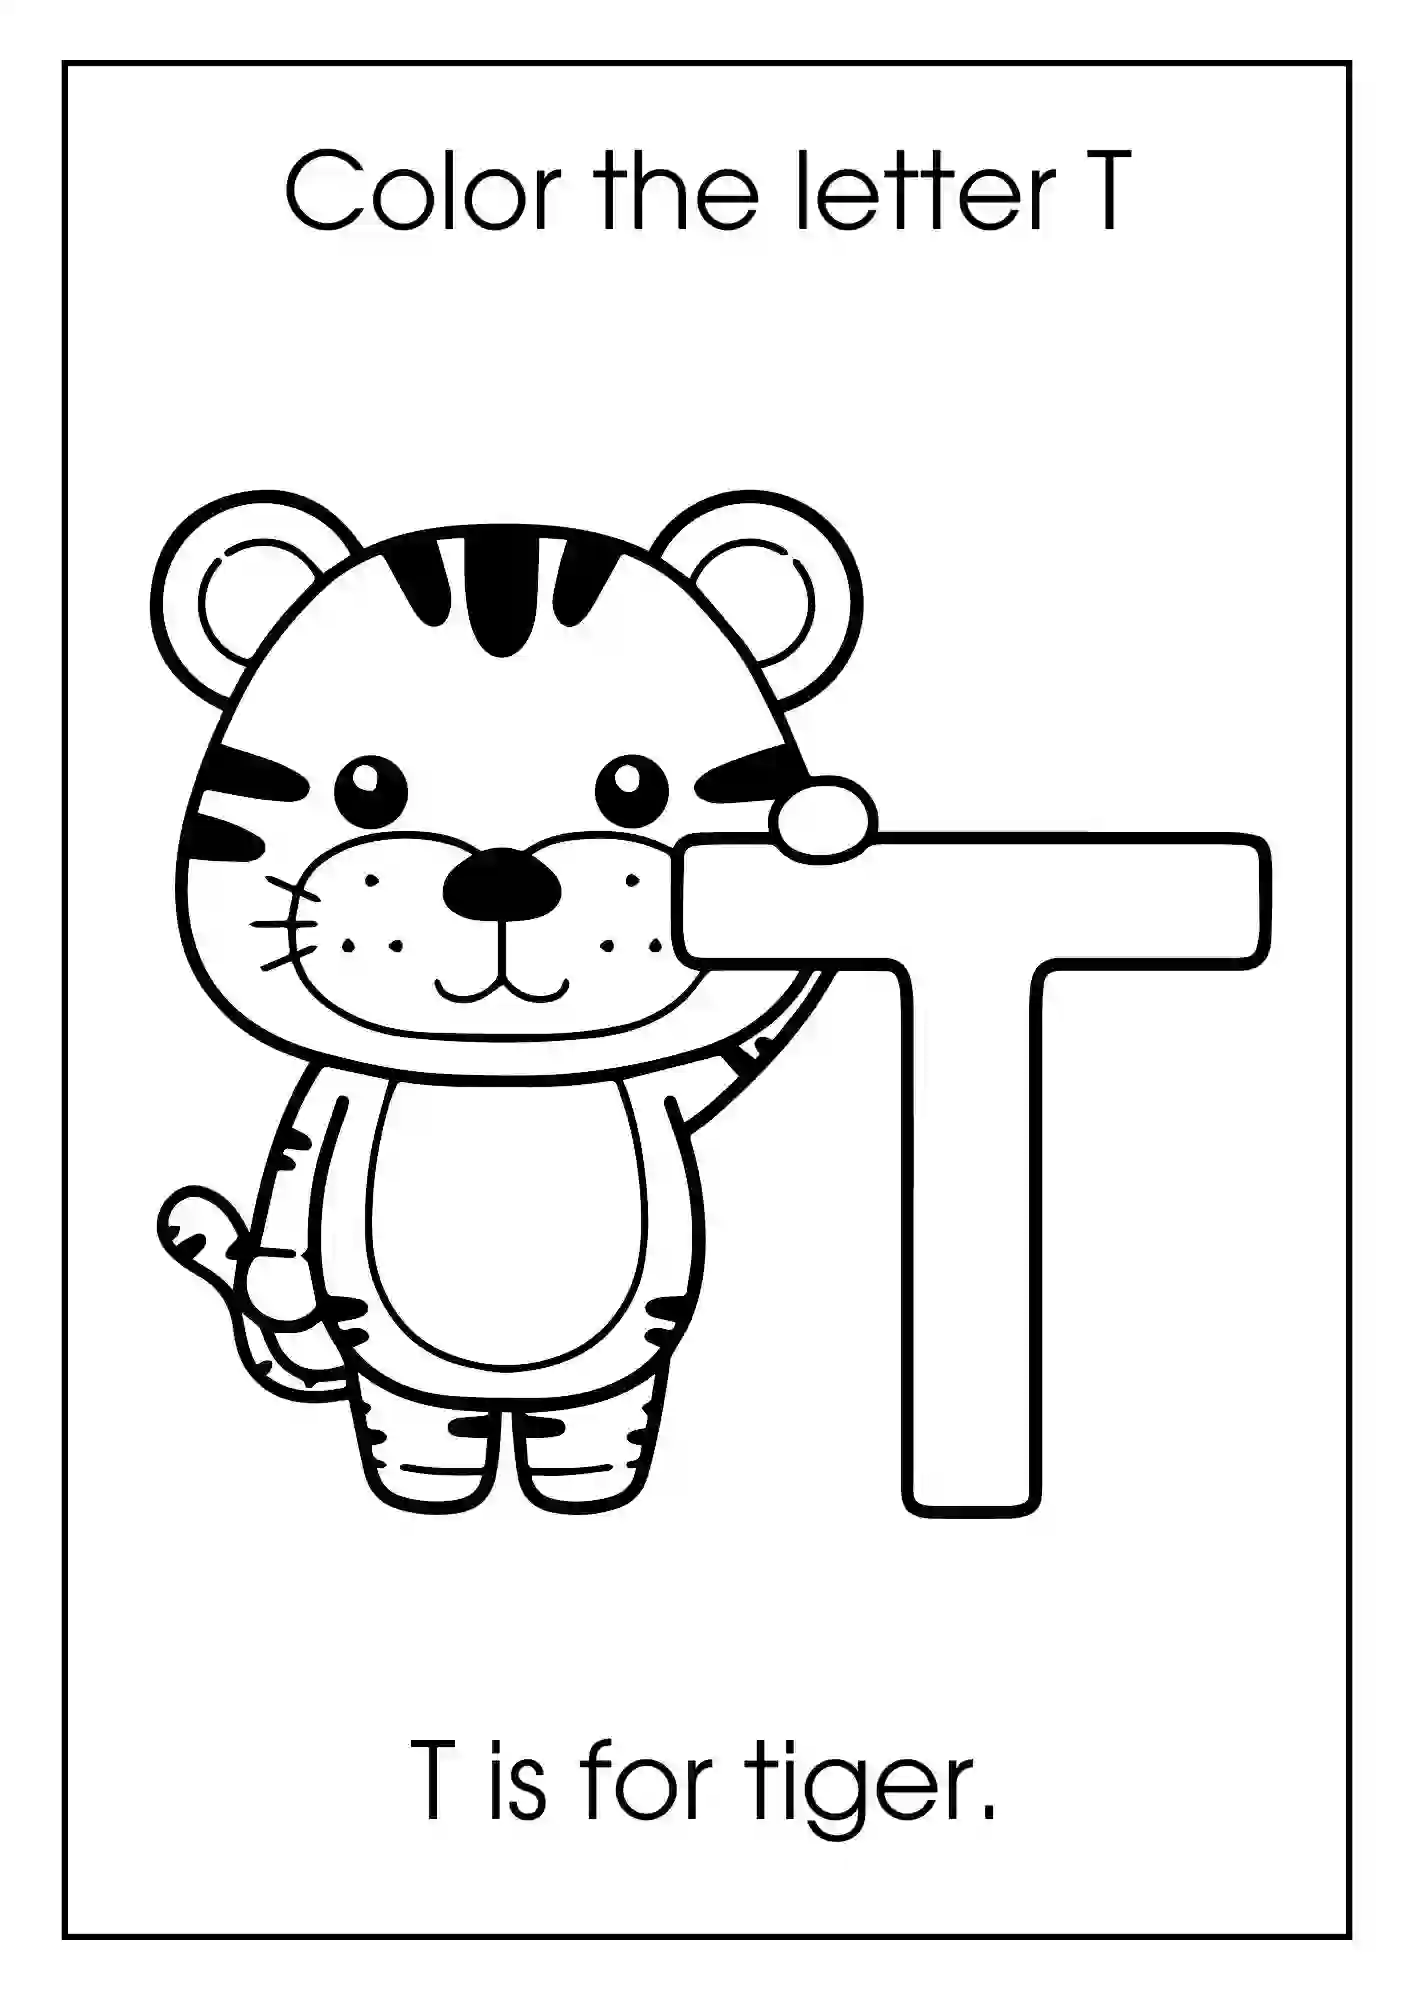 Animal Alphabet Coloring Worksheets For Kindergarten (Letter t with tiger)